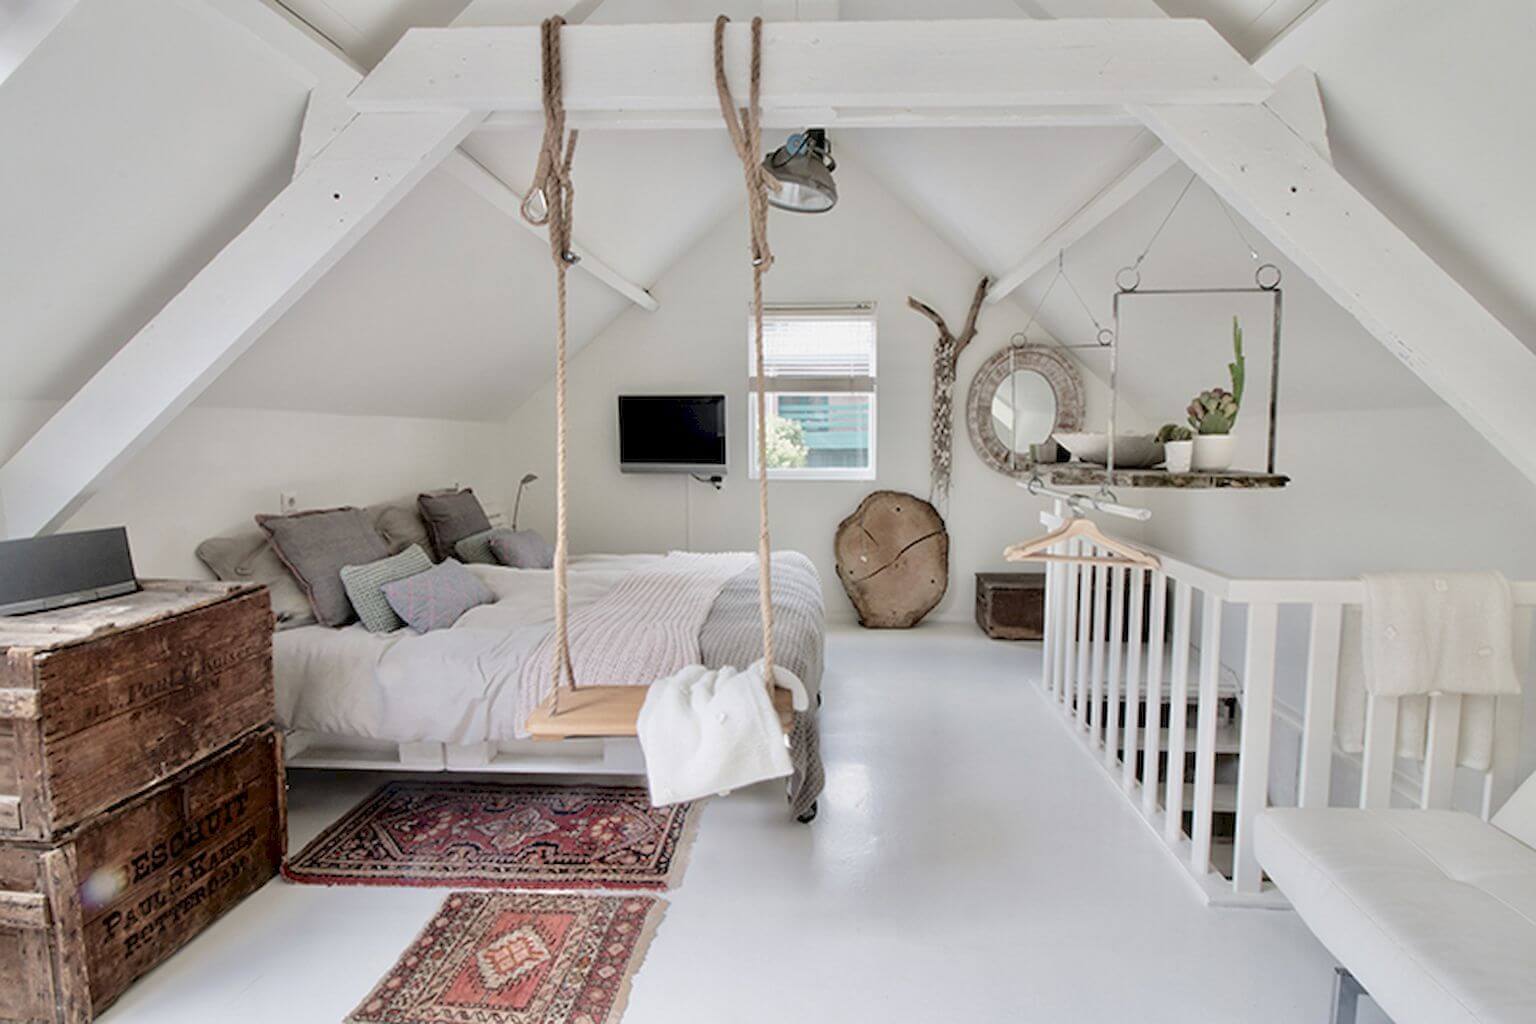 Super cool loft bedroom